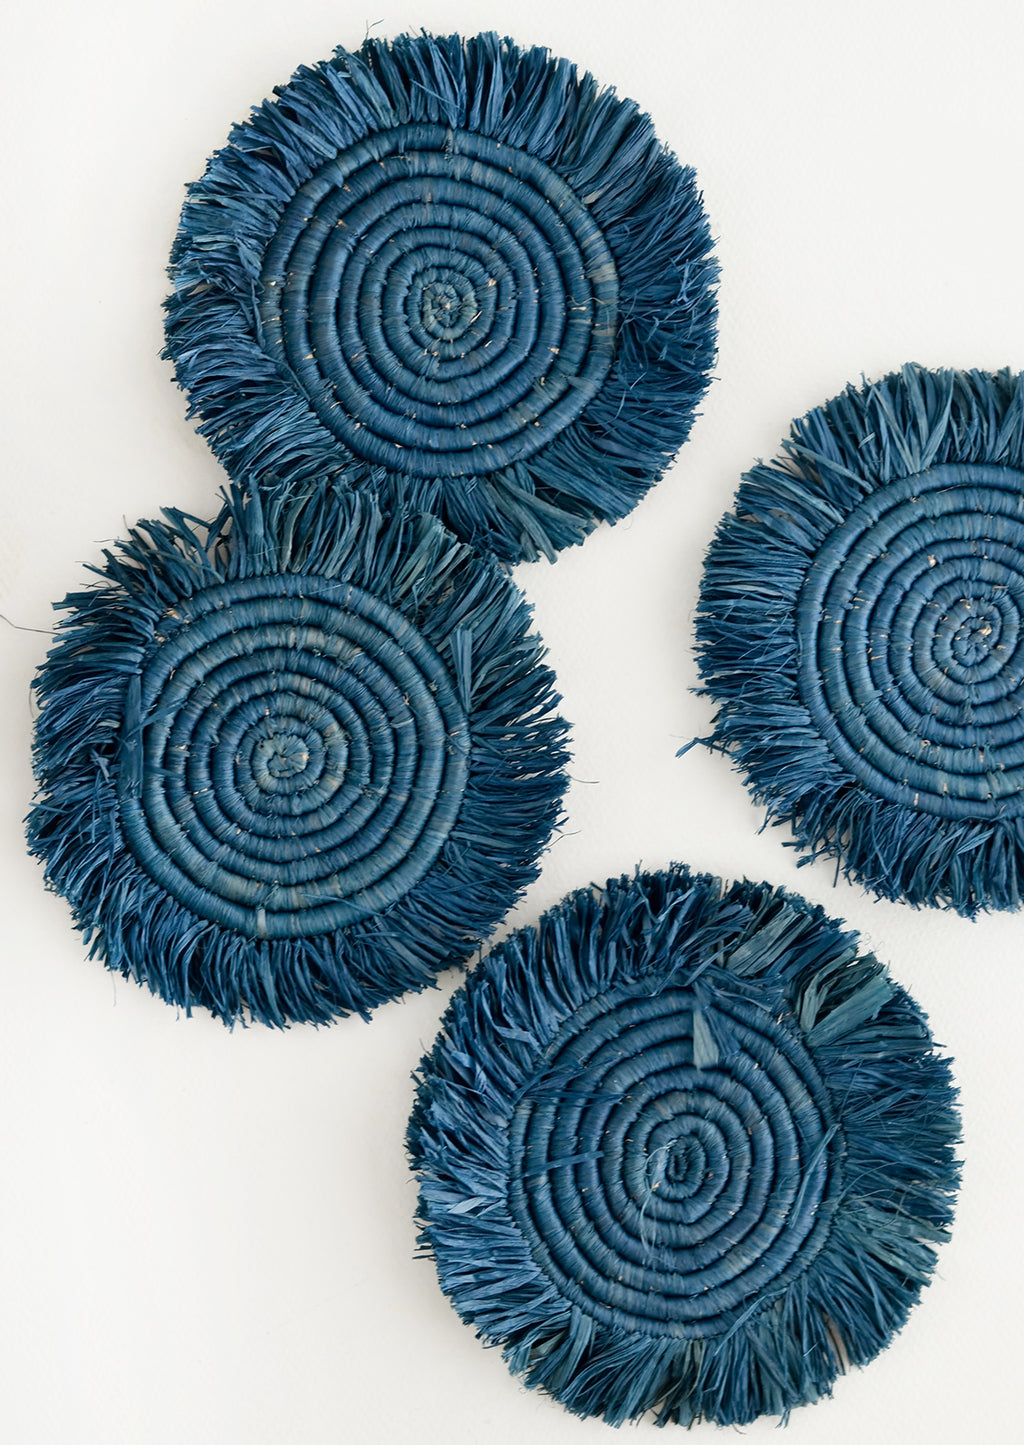 Coastal Blue: Set of 4 Circular Raffia Coasters with Fringed Trim in Coastal Blue